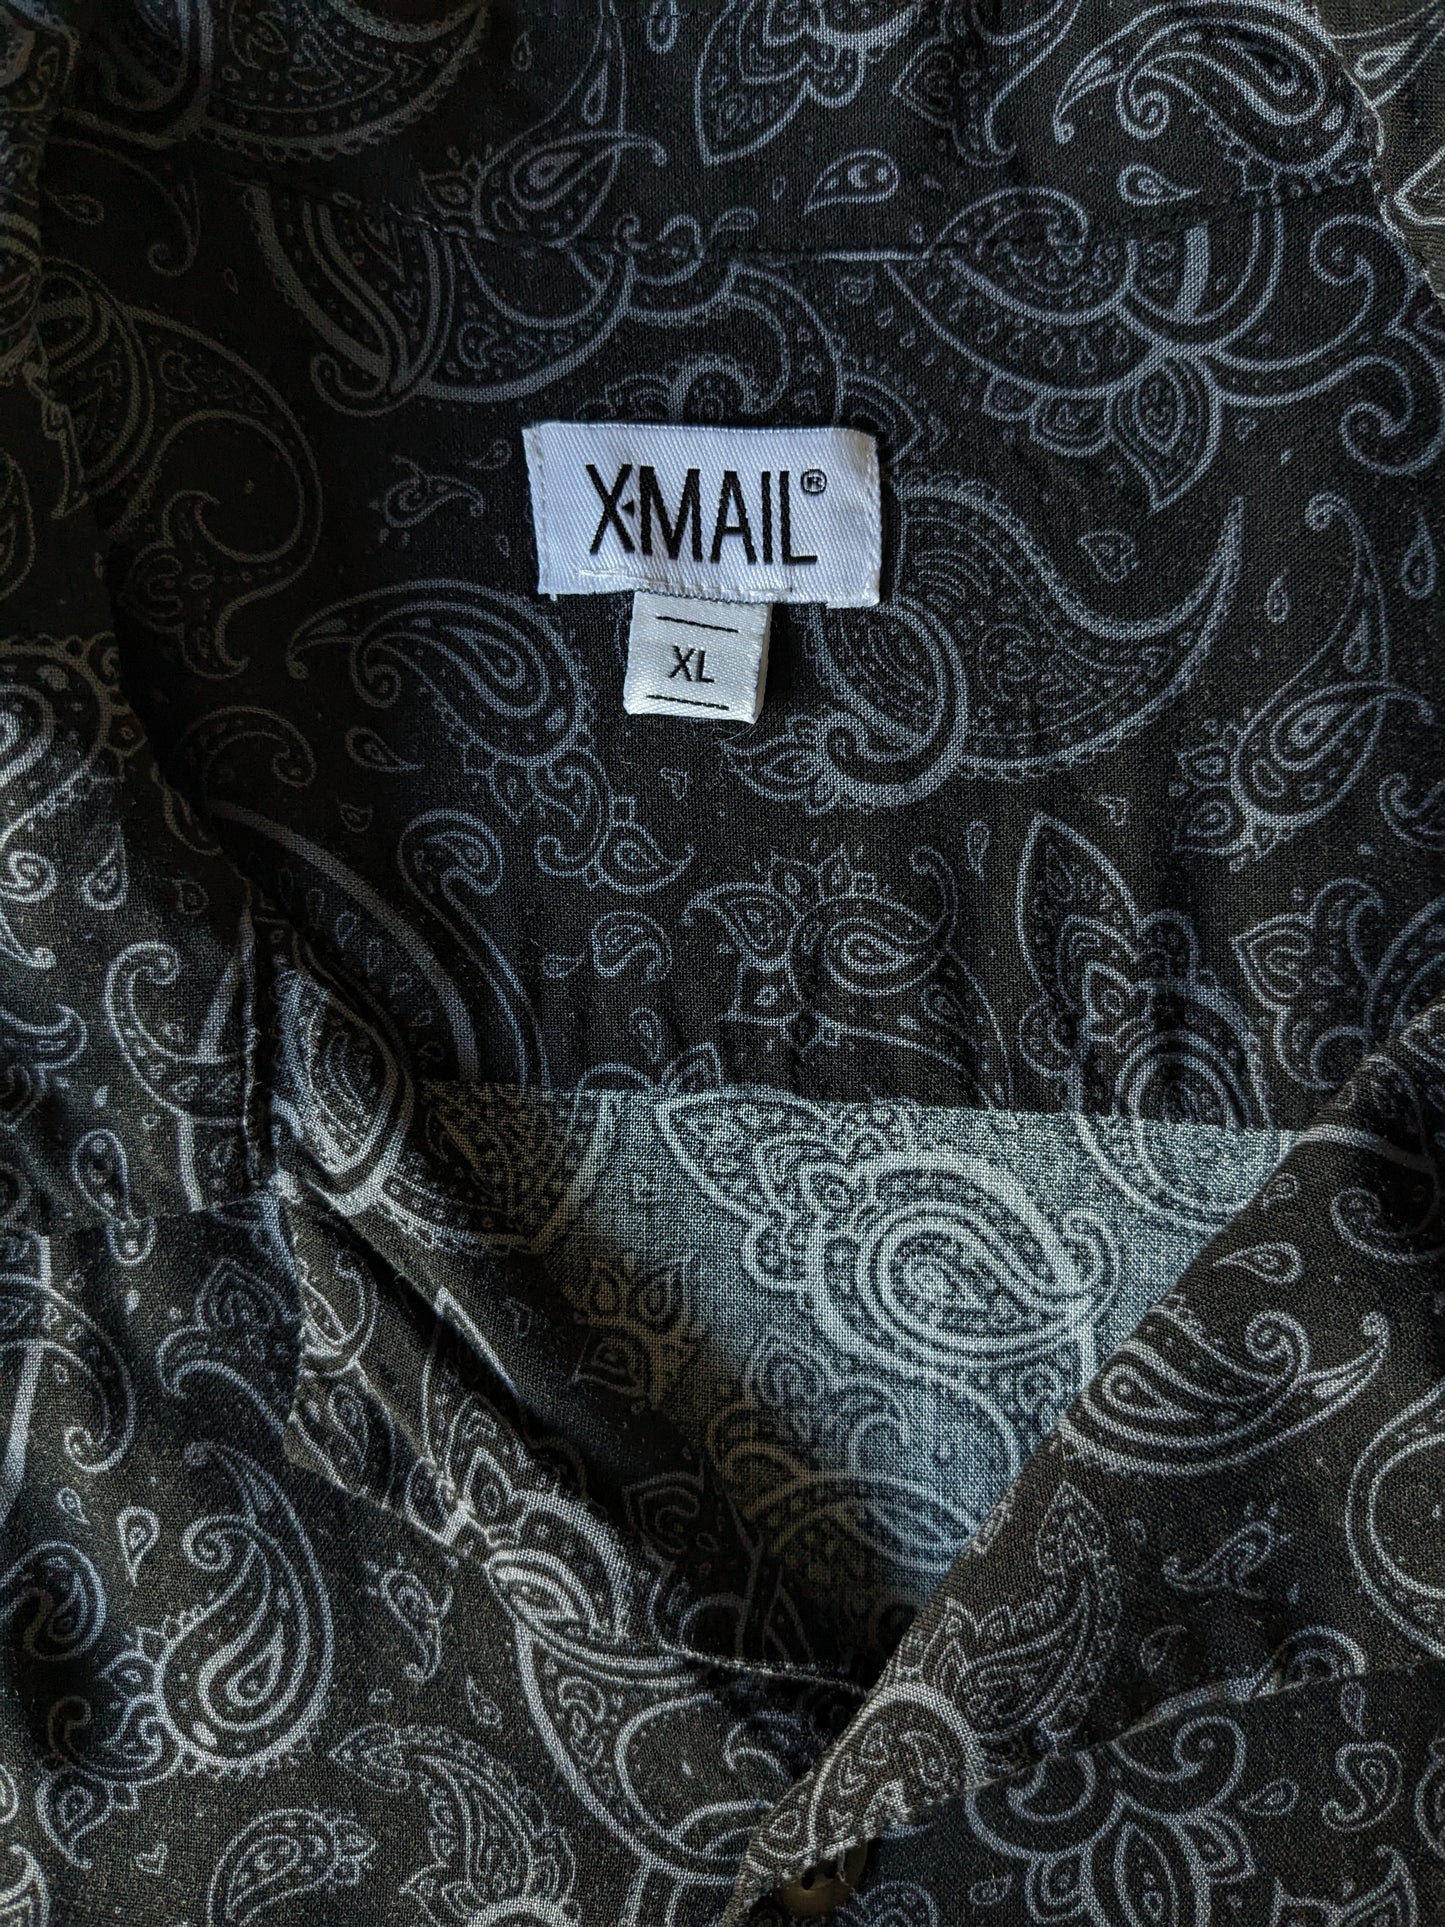 Camisa de correo X manga corta. Impresión de Paisley gris negro. Tamaño xl.